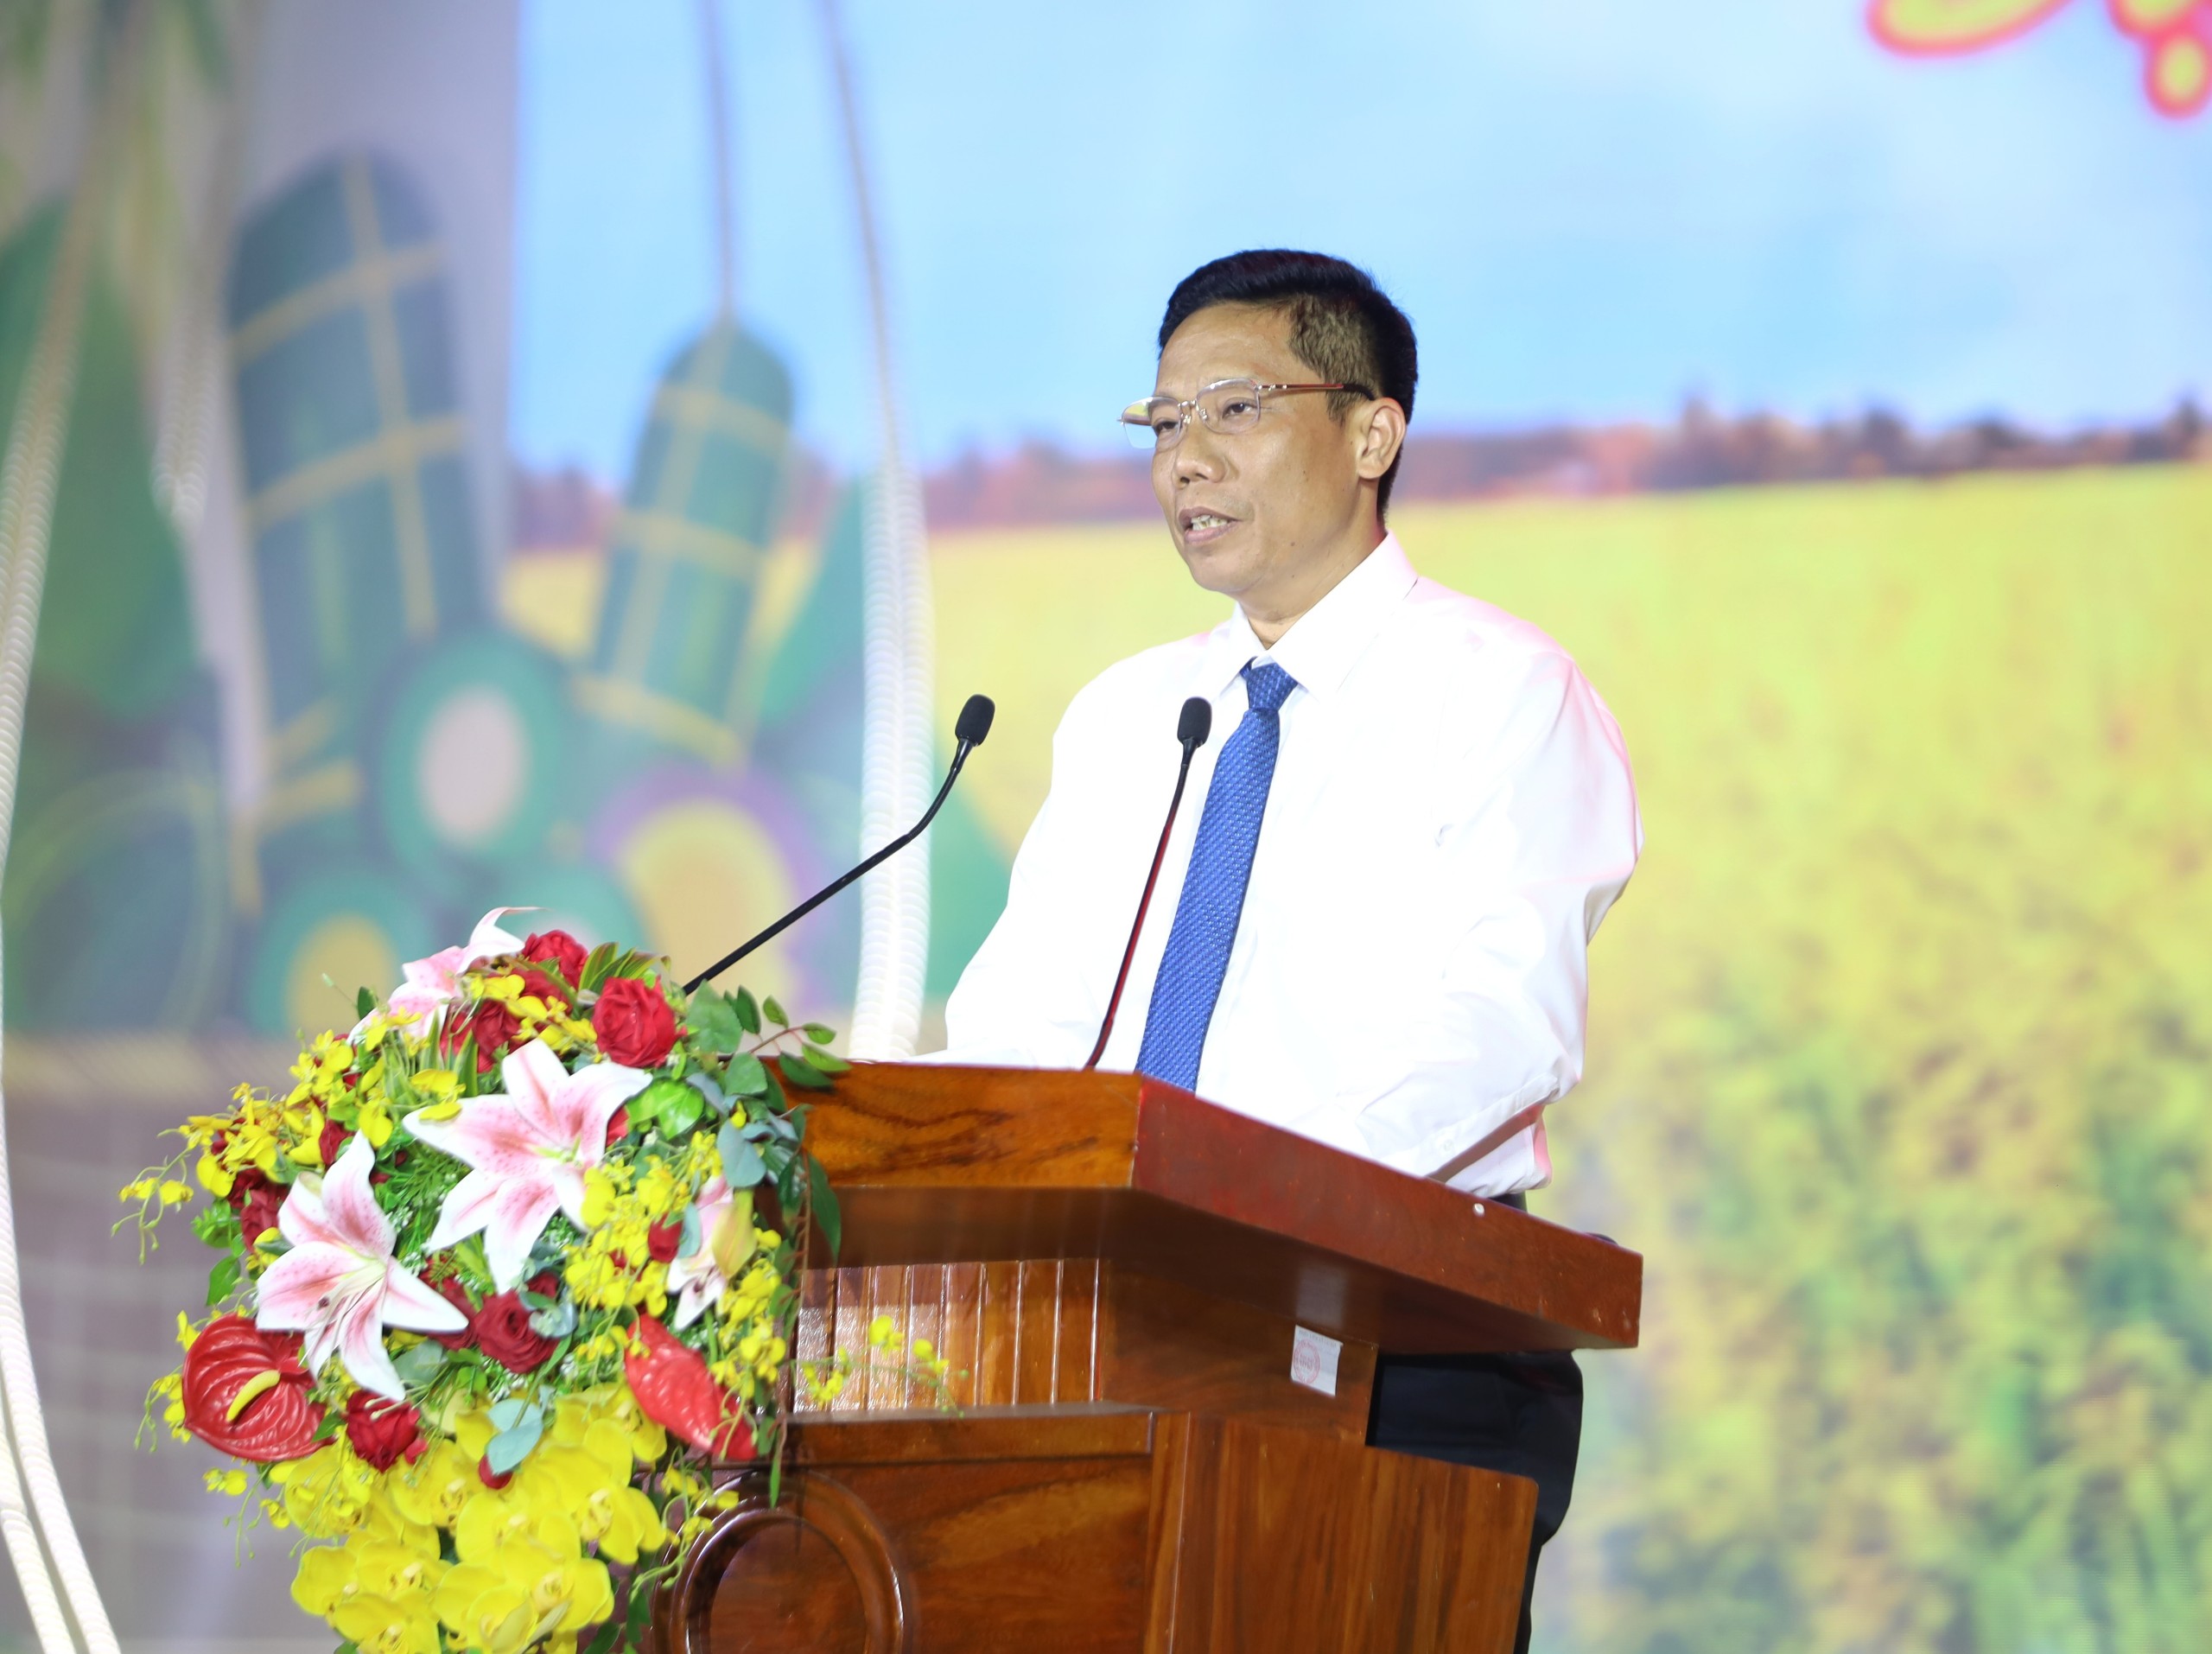 Ông Nguyễn Thực Hiện – Phó Chủ tịch UBND TP. Cần Thơ phát biểu khai mạc.